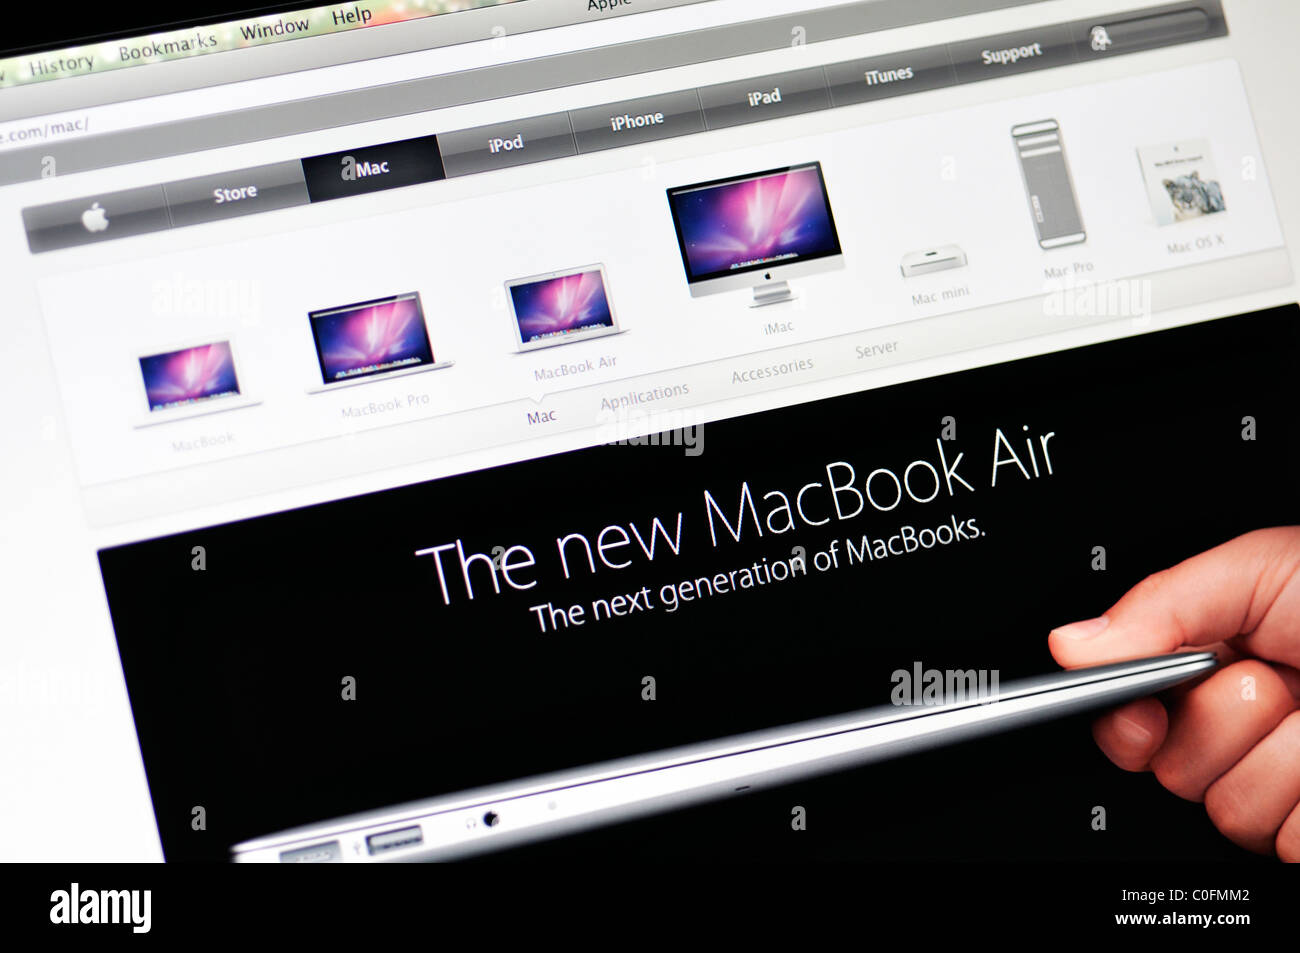 MacBook Air applicazioni al sito Apple Store Foto Stock